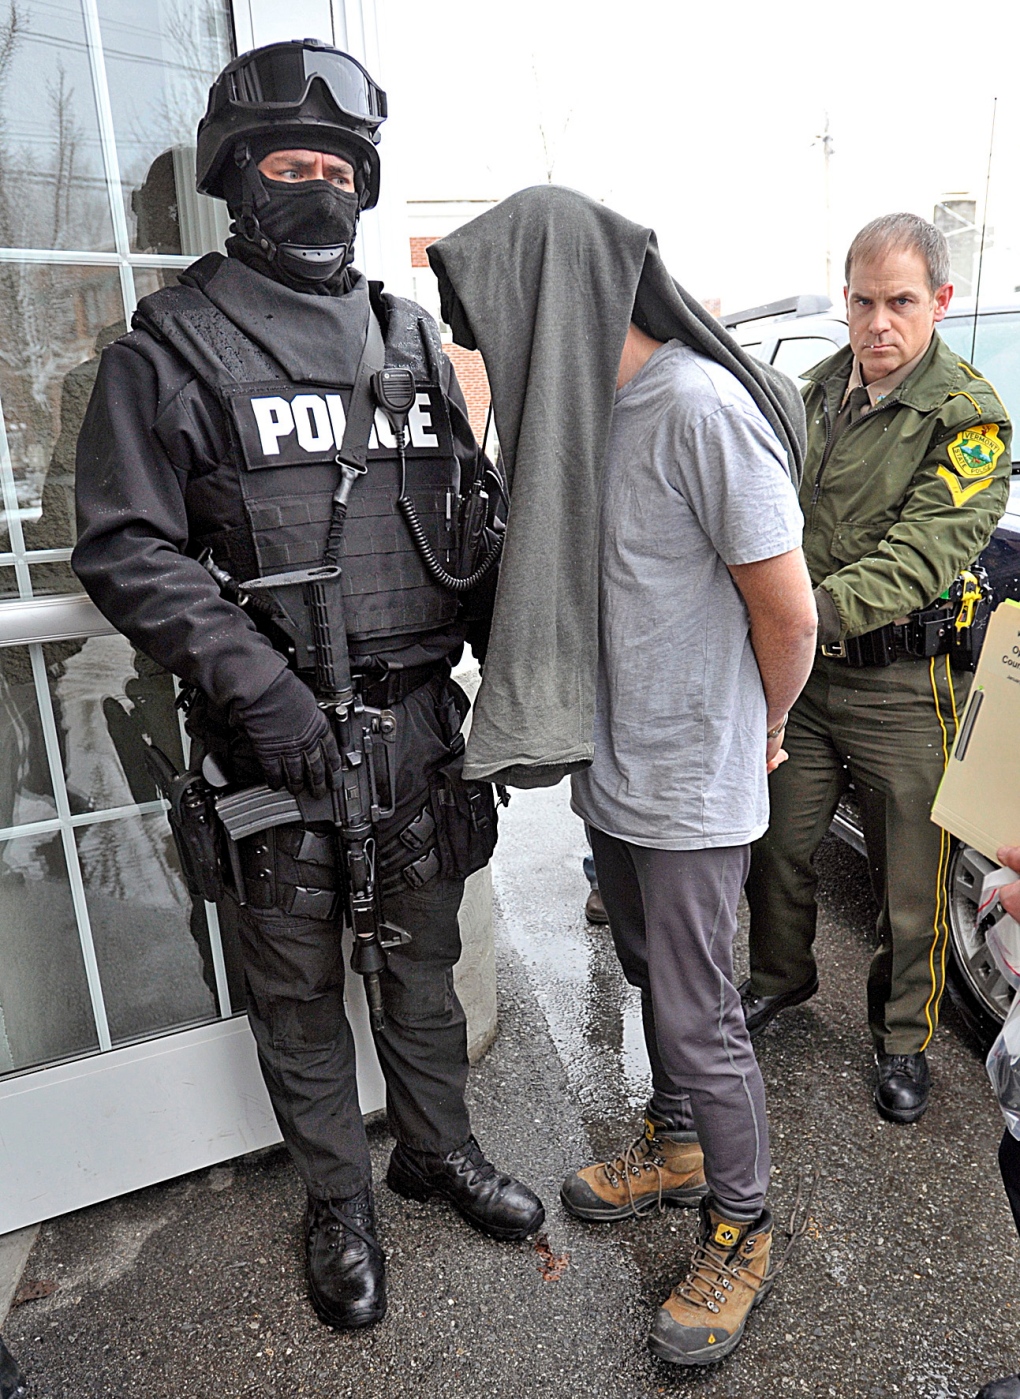 Drugs Vermont investigation arrest